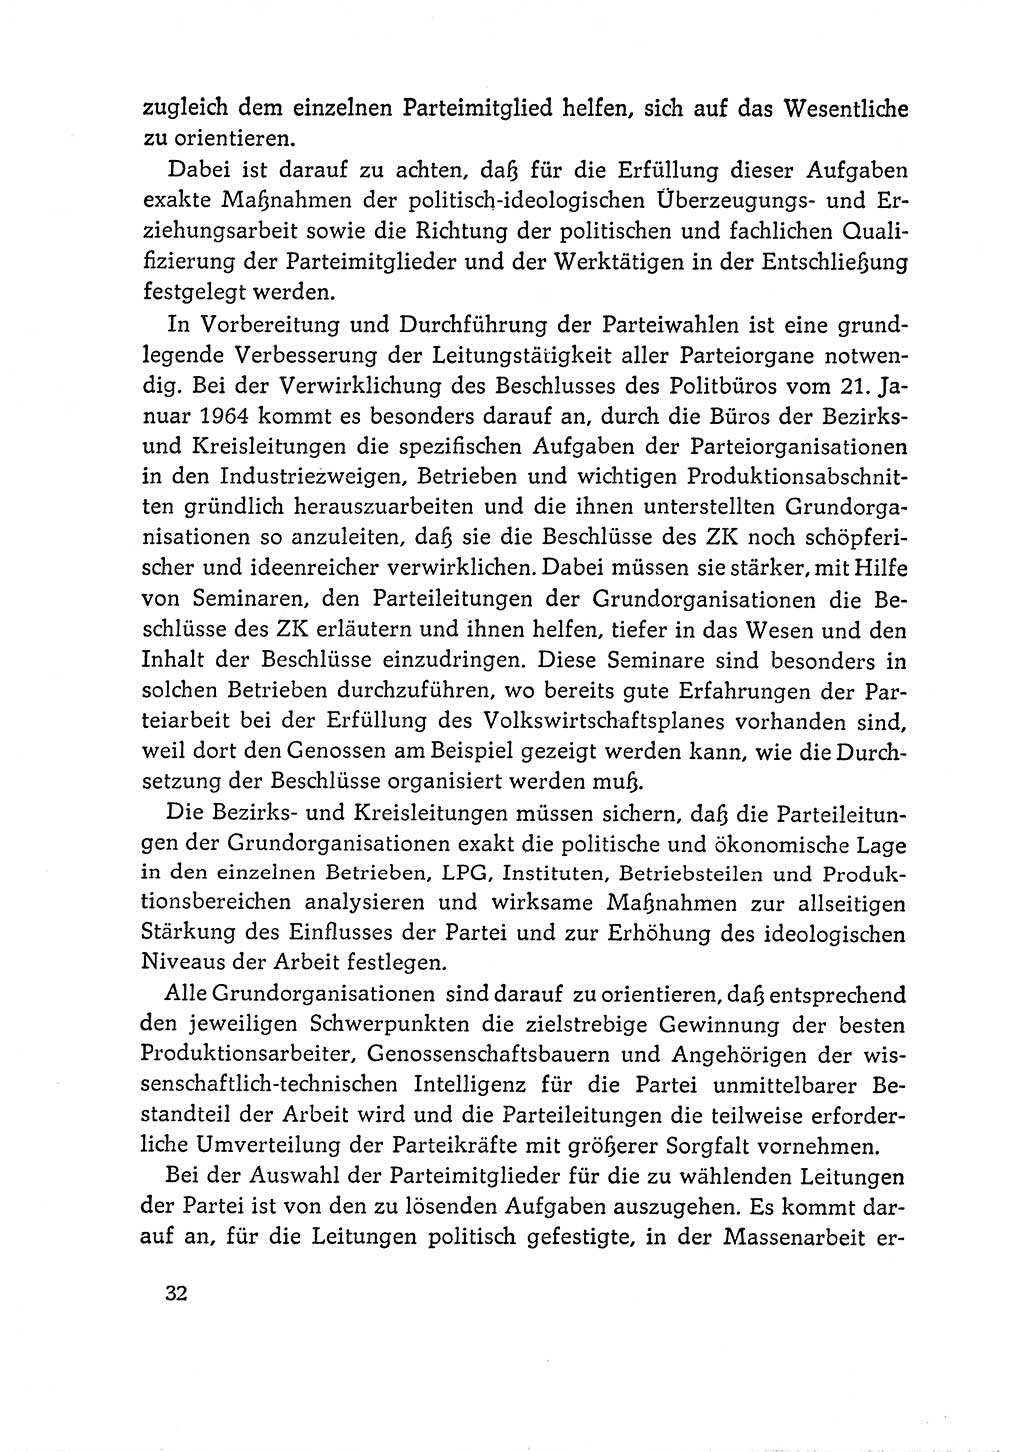 Dokumente der Sozialistischen Einheitspartei Deutschlands (SED) [Deutsche Demokratische Republik (DDR)] 1964-1965, Seite 32 (Dok. SED DDR 1964-1965, S. 32)